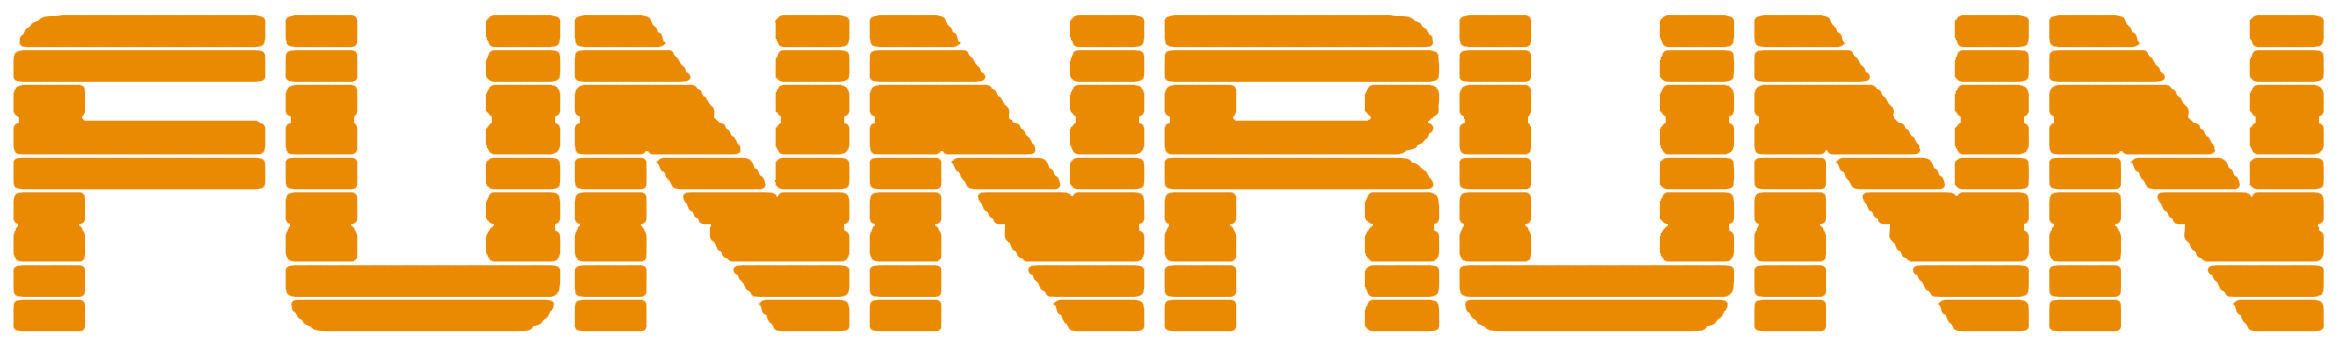 funnRunn-logo-test-2-orange